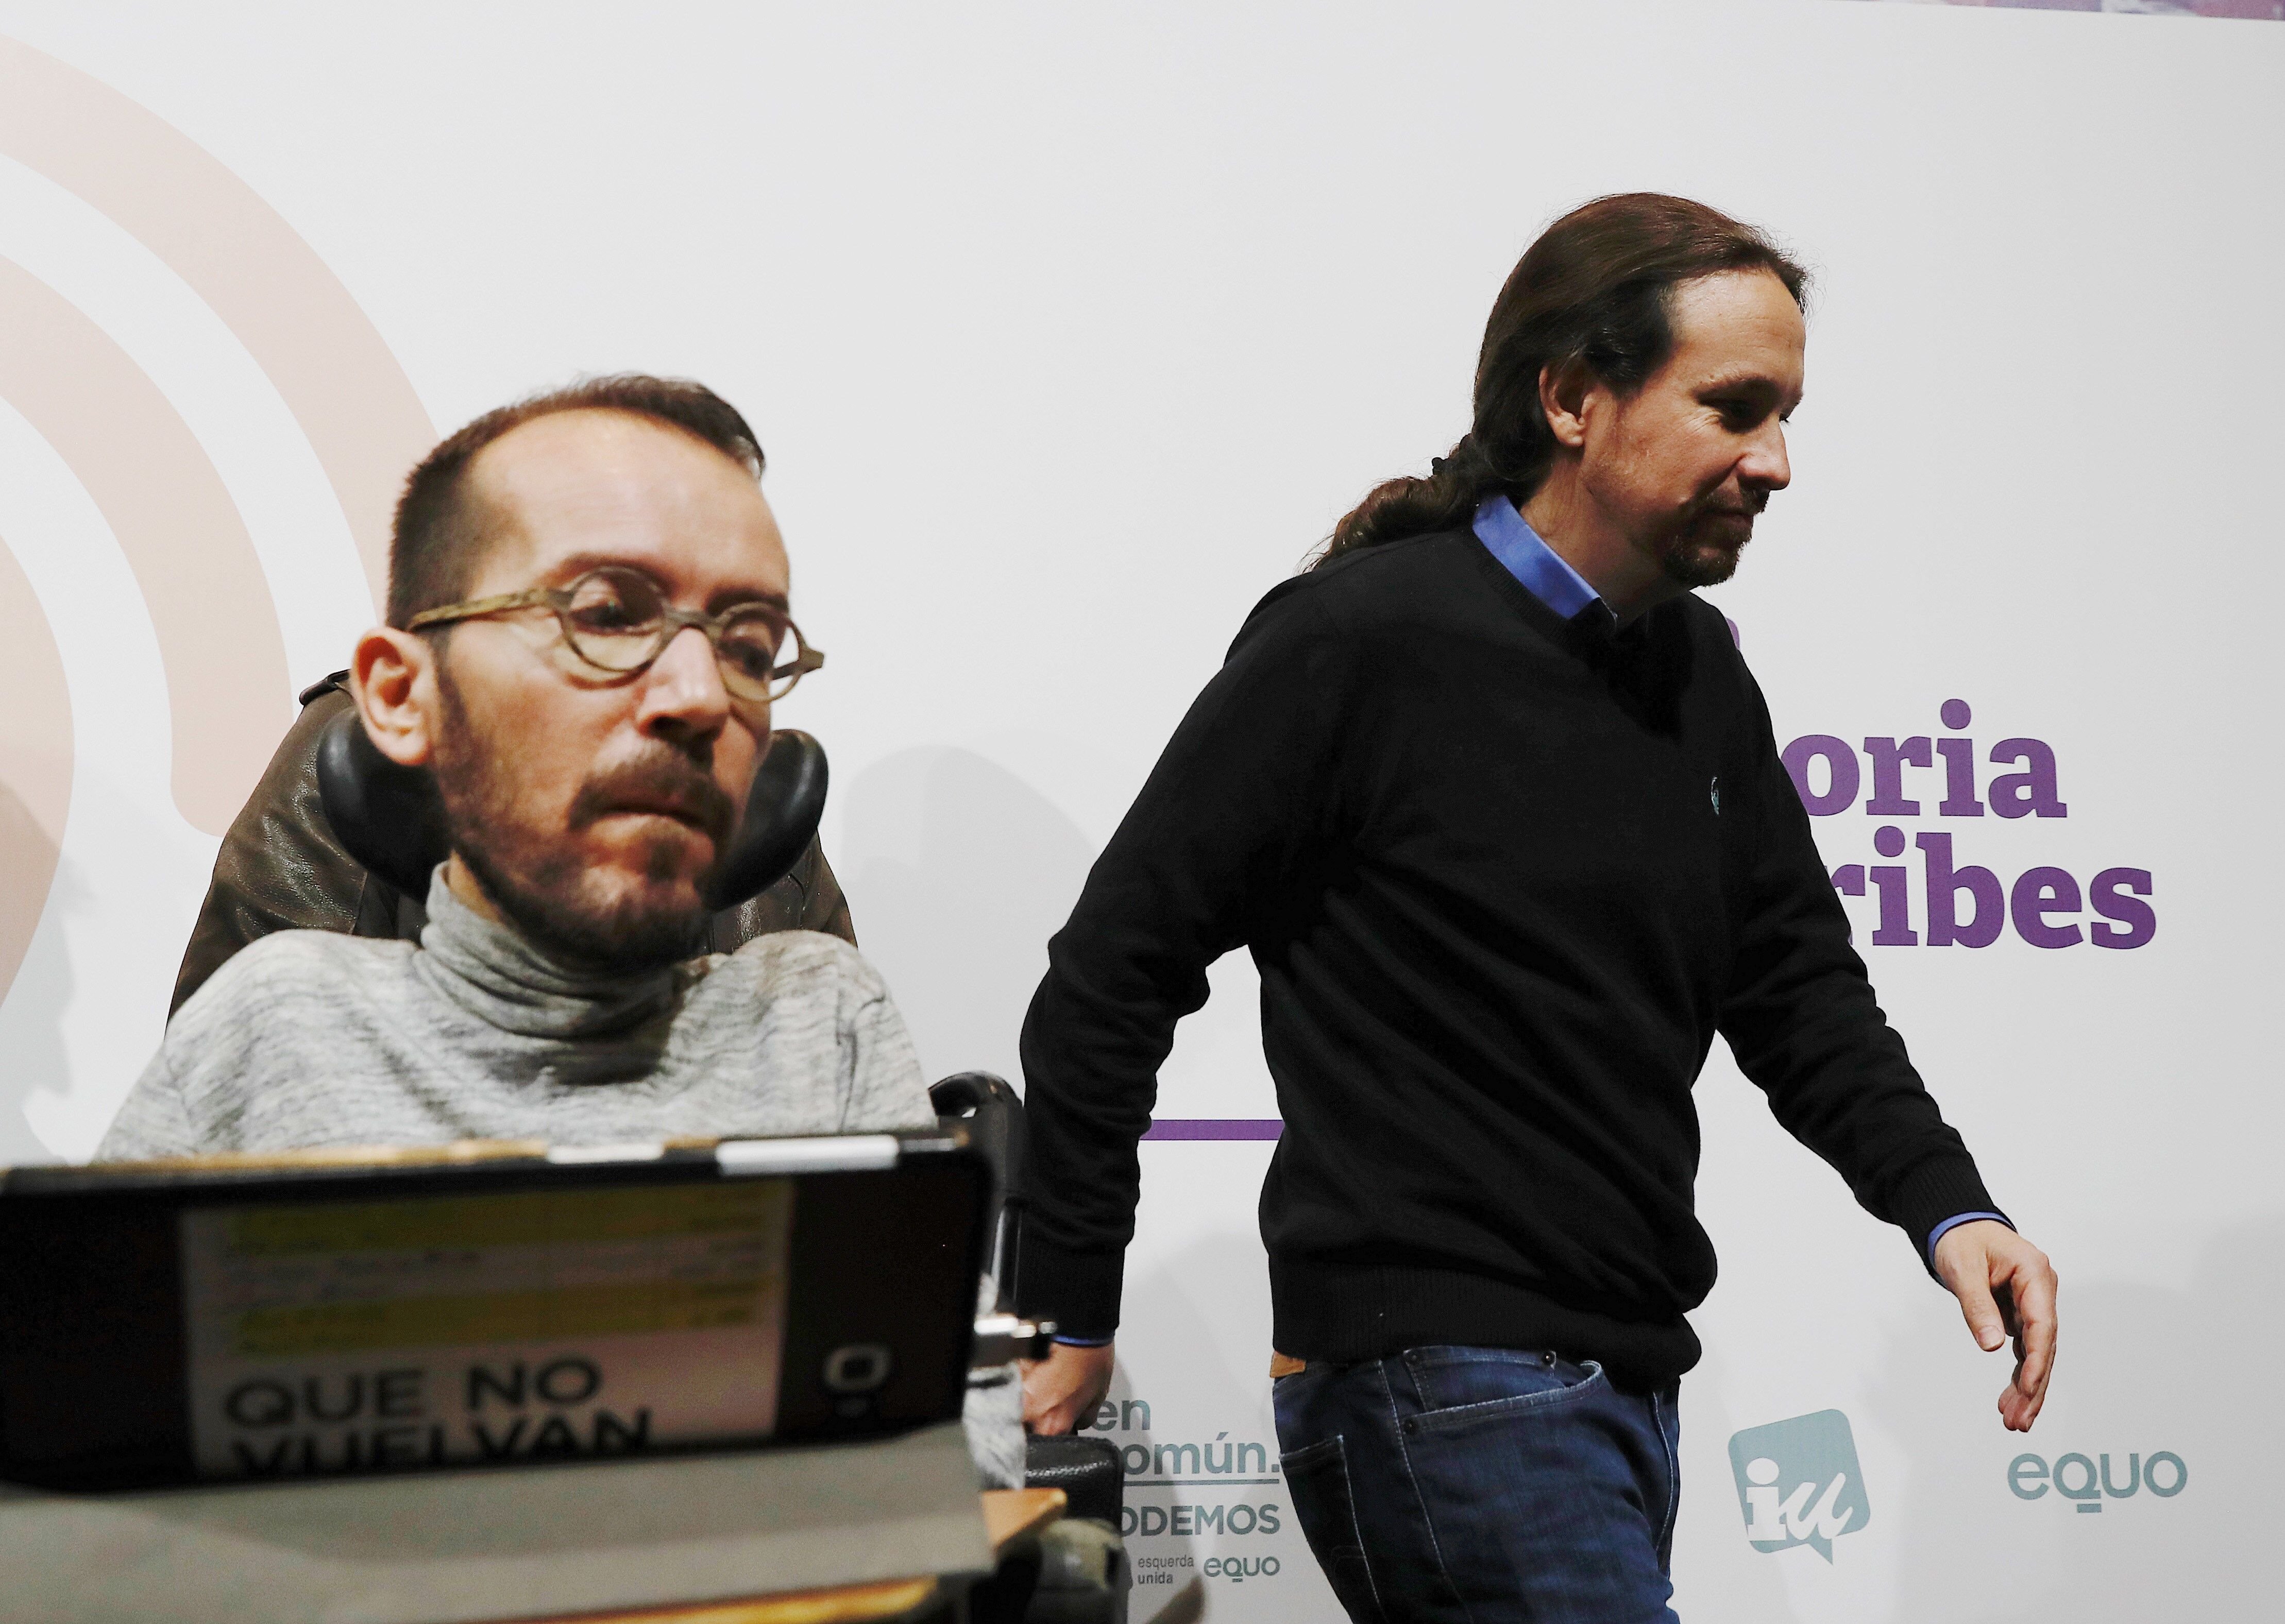 Podria haver-hi ministres de Podemos?